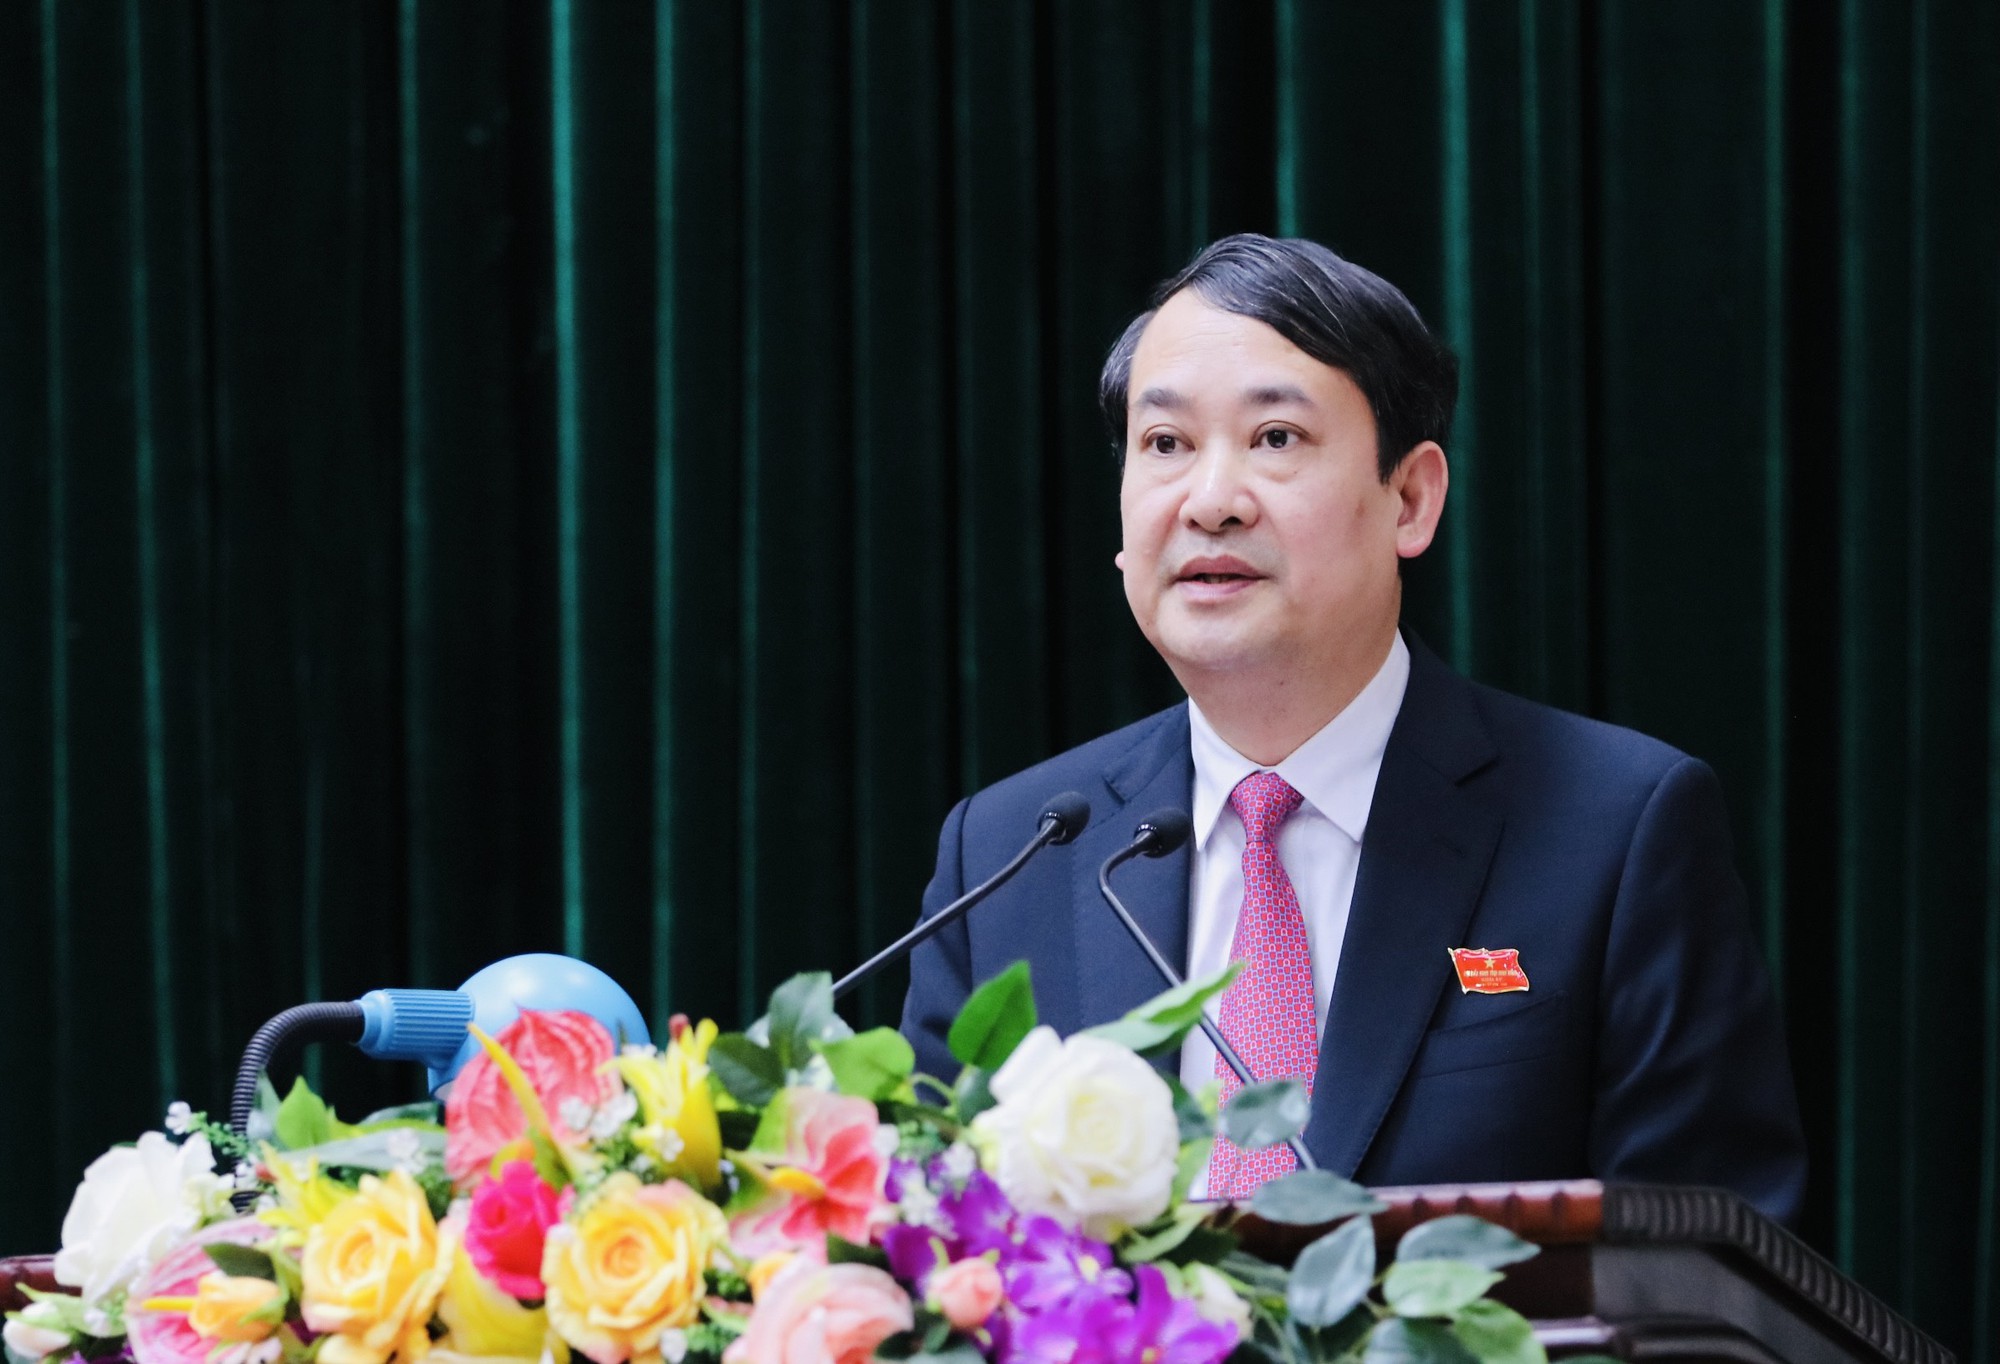 Bộ Chính trị giao nhân sự điều hành Ban Thường vụ Ban Chấp hành Đảng bộ Ninh Bình thay bà Nguyễn Thị Thu Hà - Ảnh 1.